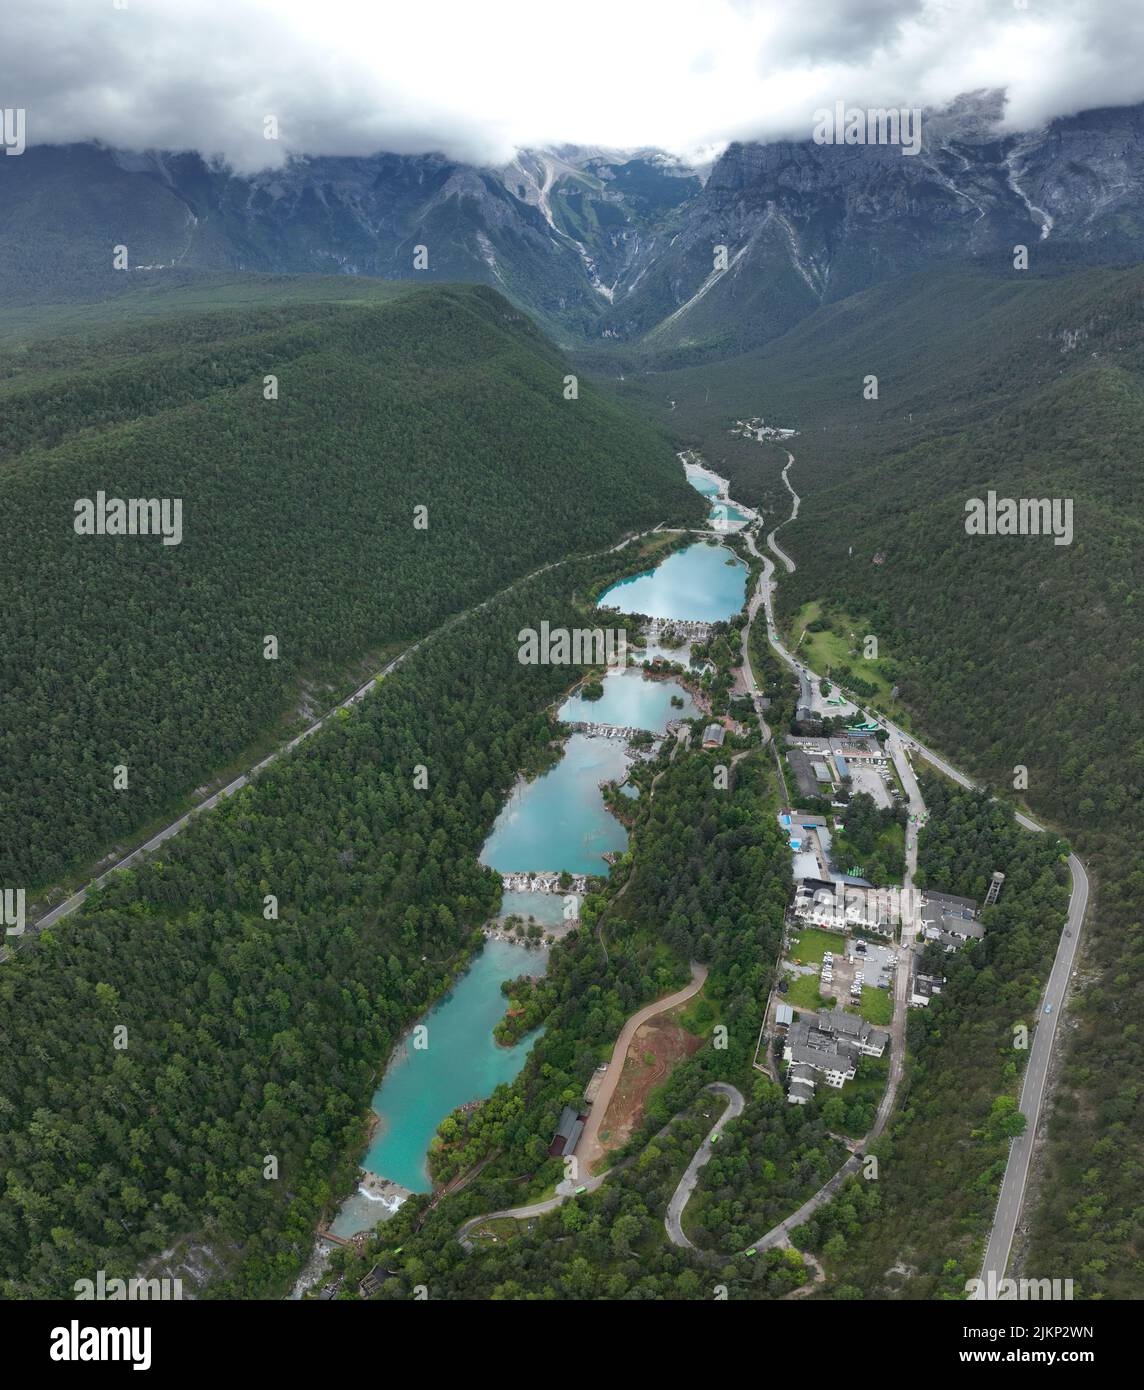 Vue aérienne de la vallée de la Lune Bleue à Lijiang, Yunnan - Chine; Banque D'Images